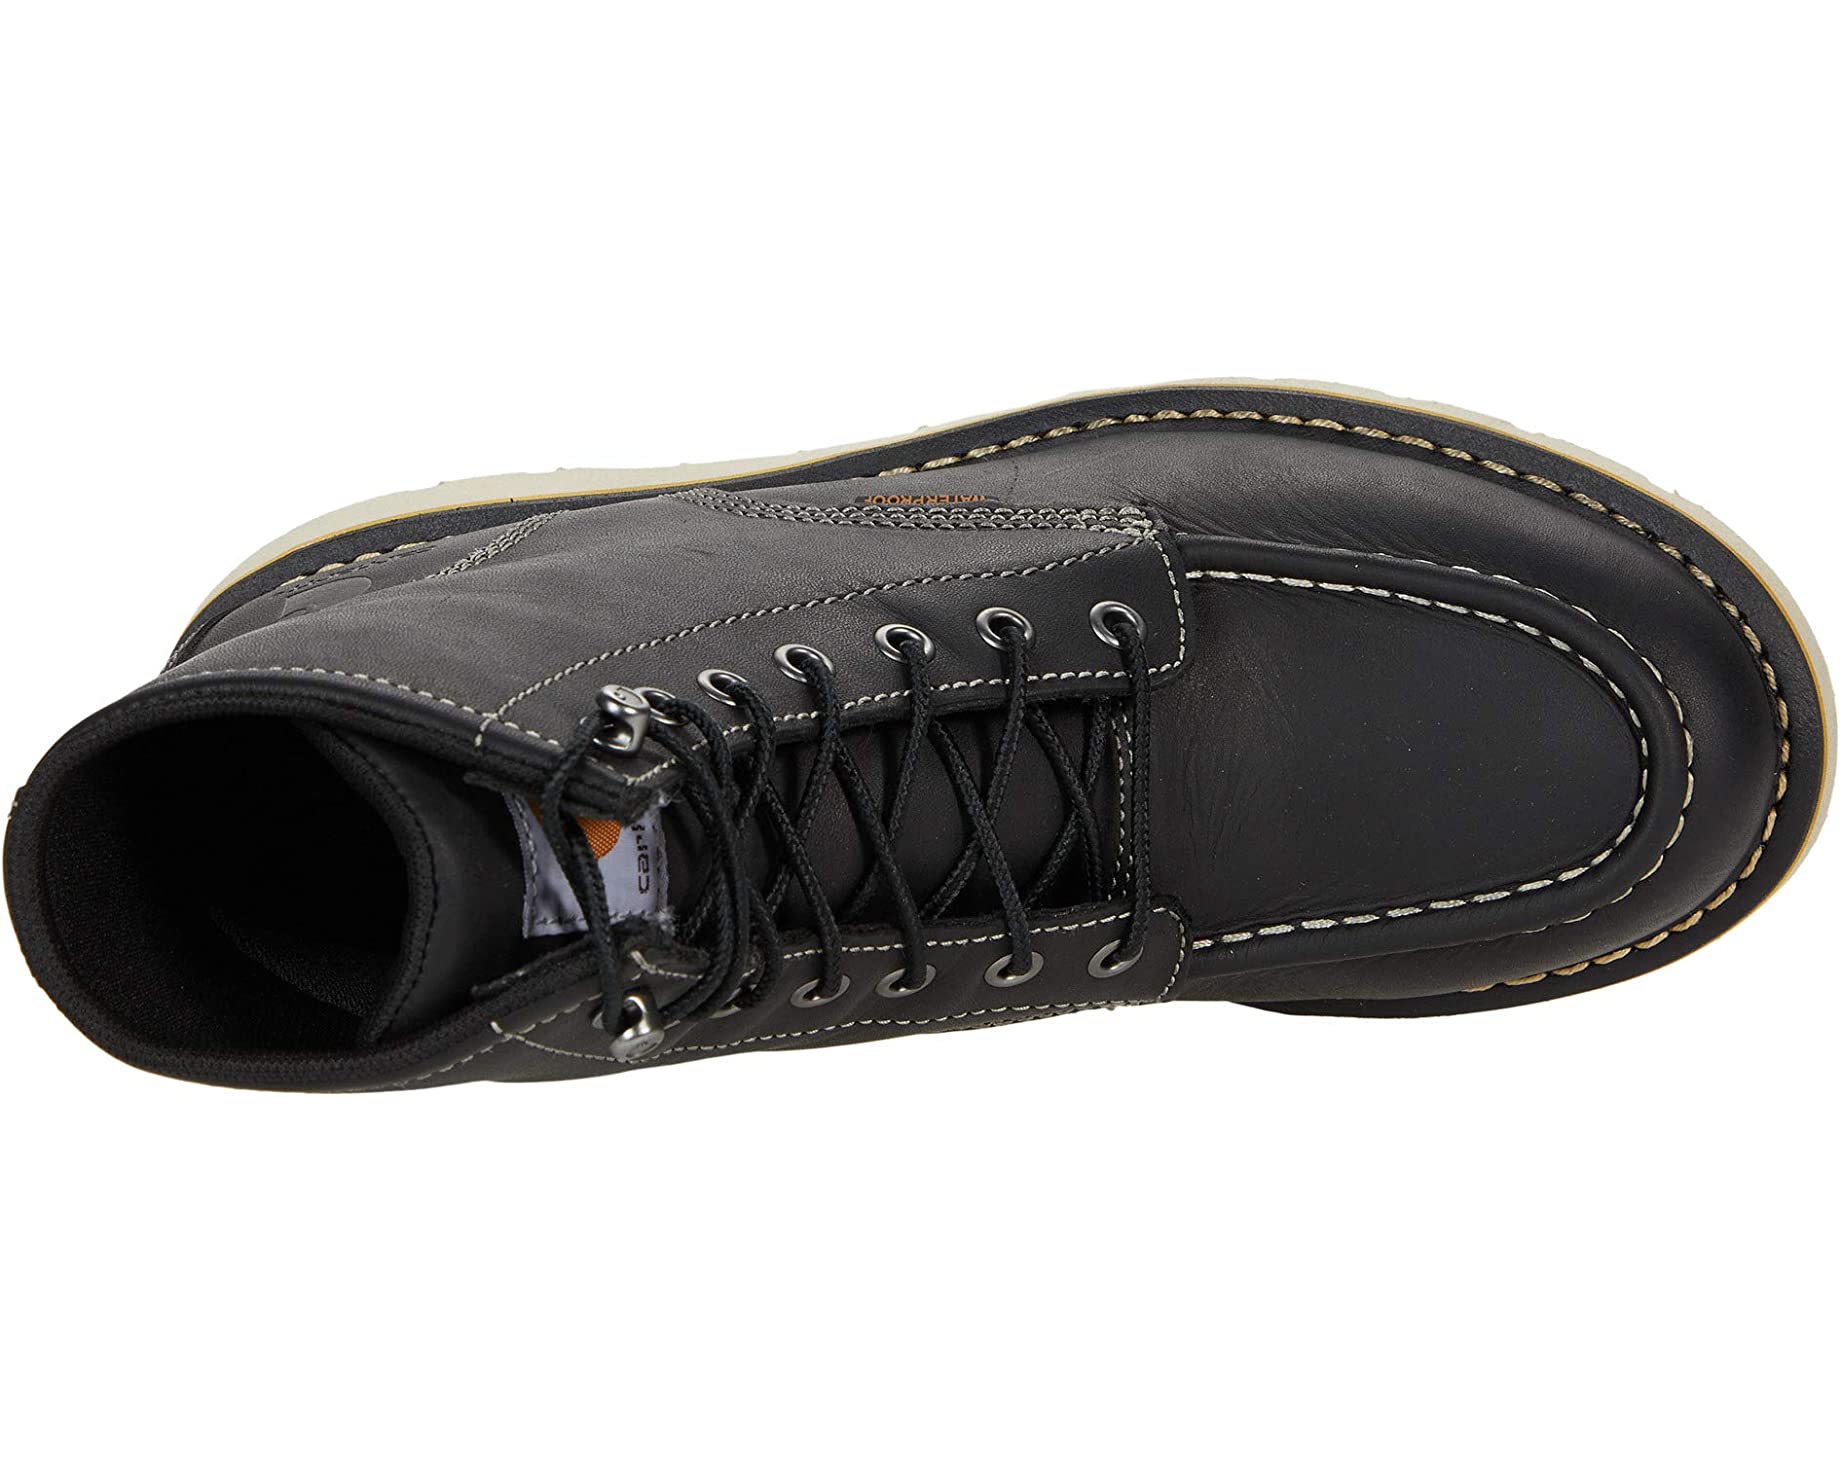 Ботинки Wedge 6 Waterproof Soft Toe Carhartt, черный цена и фото